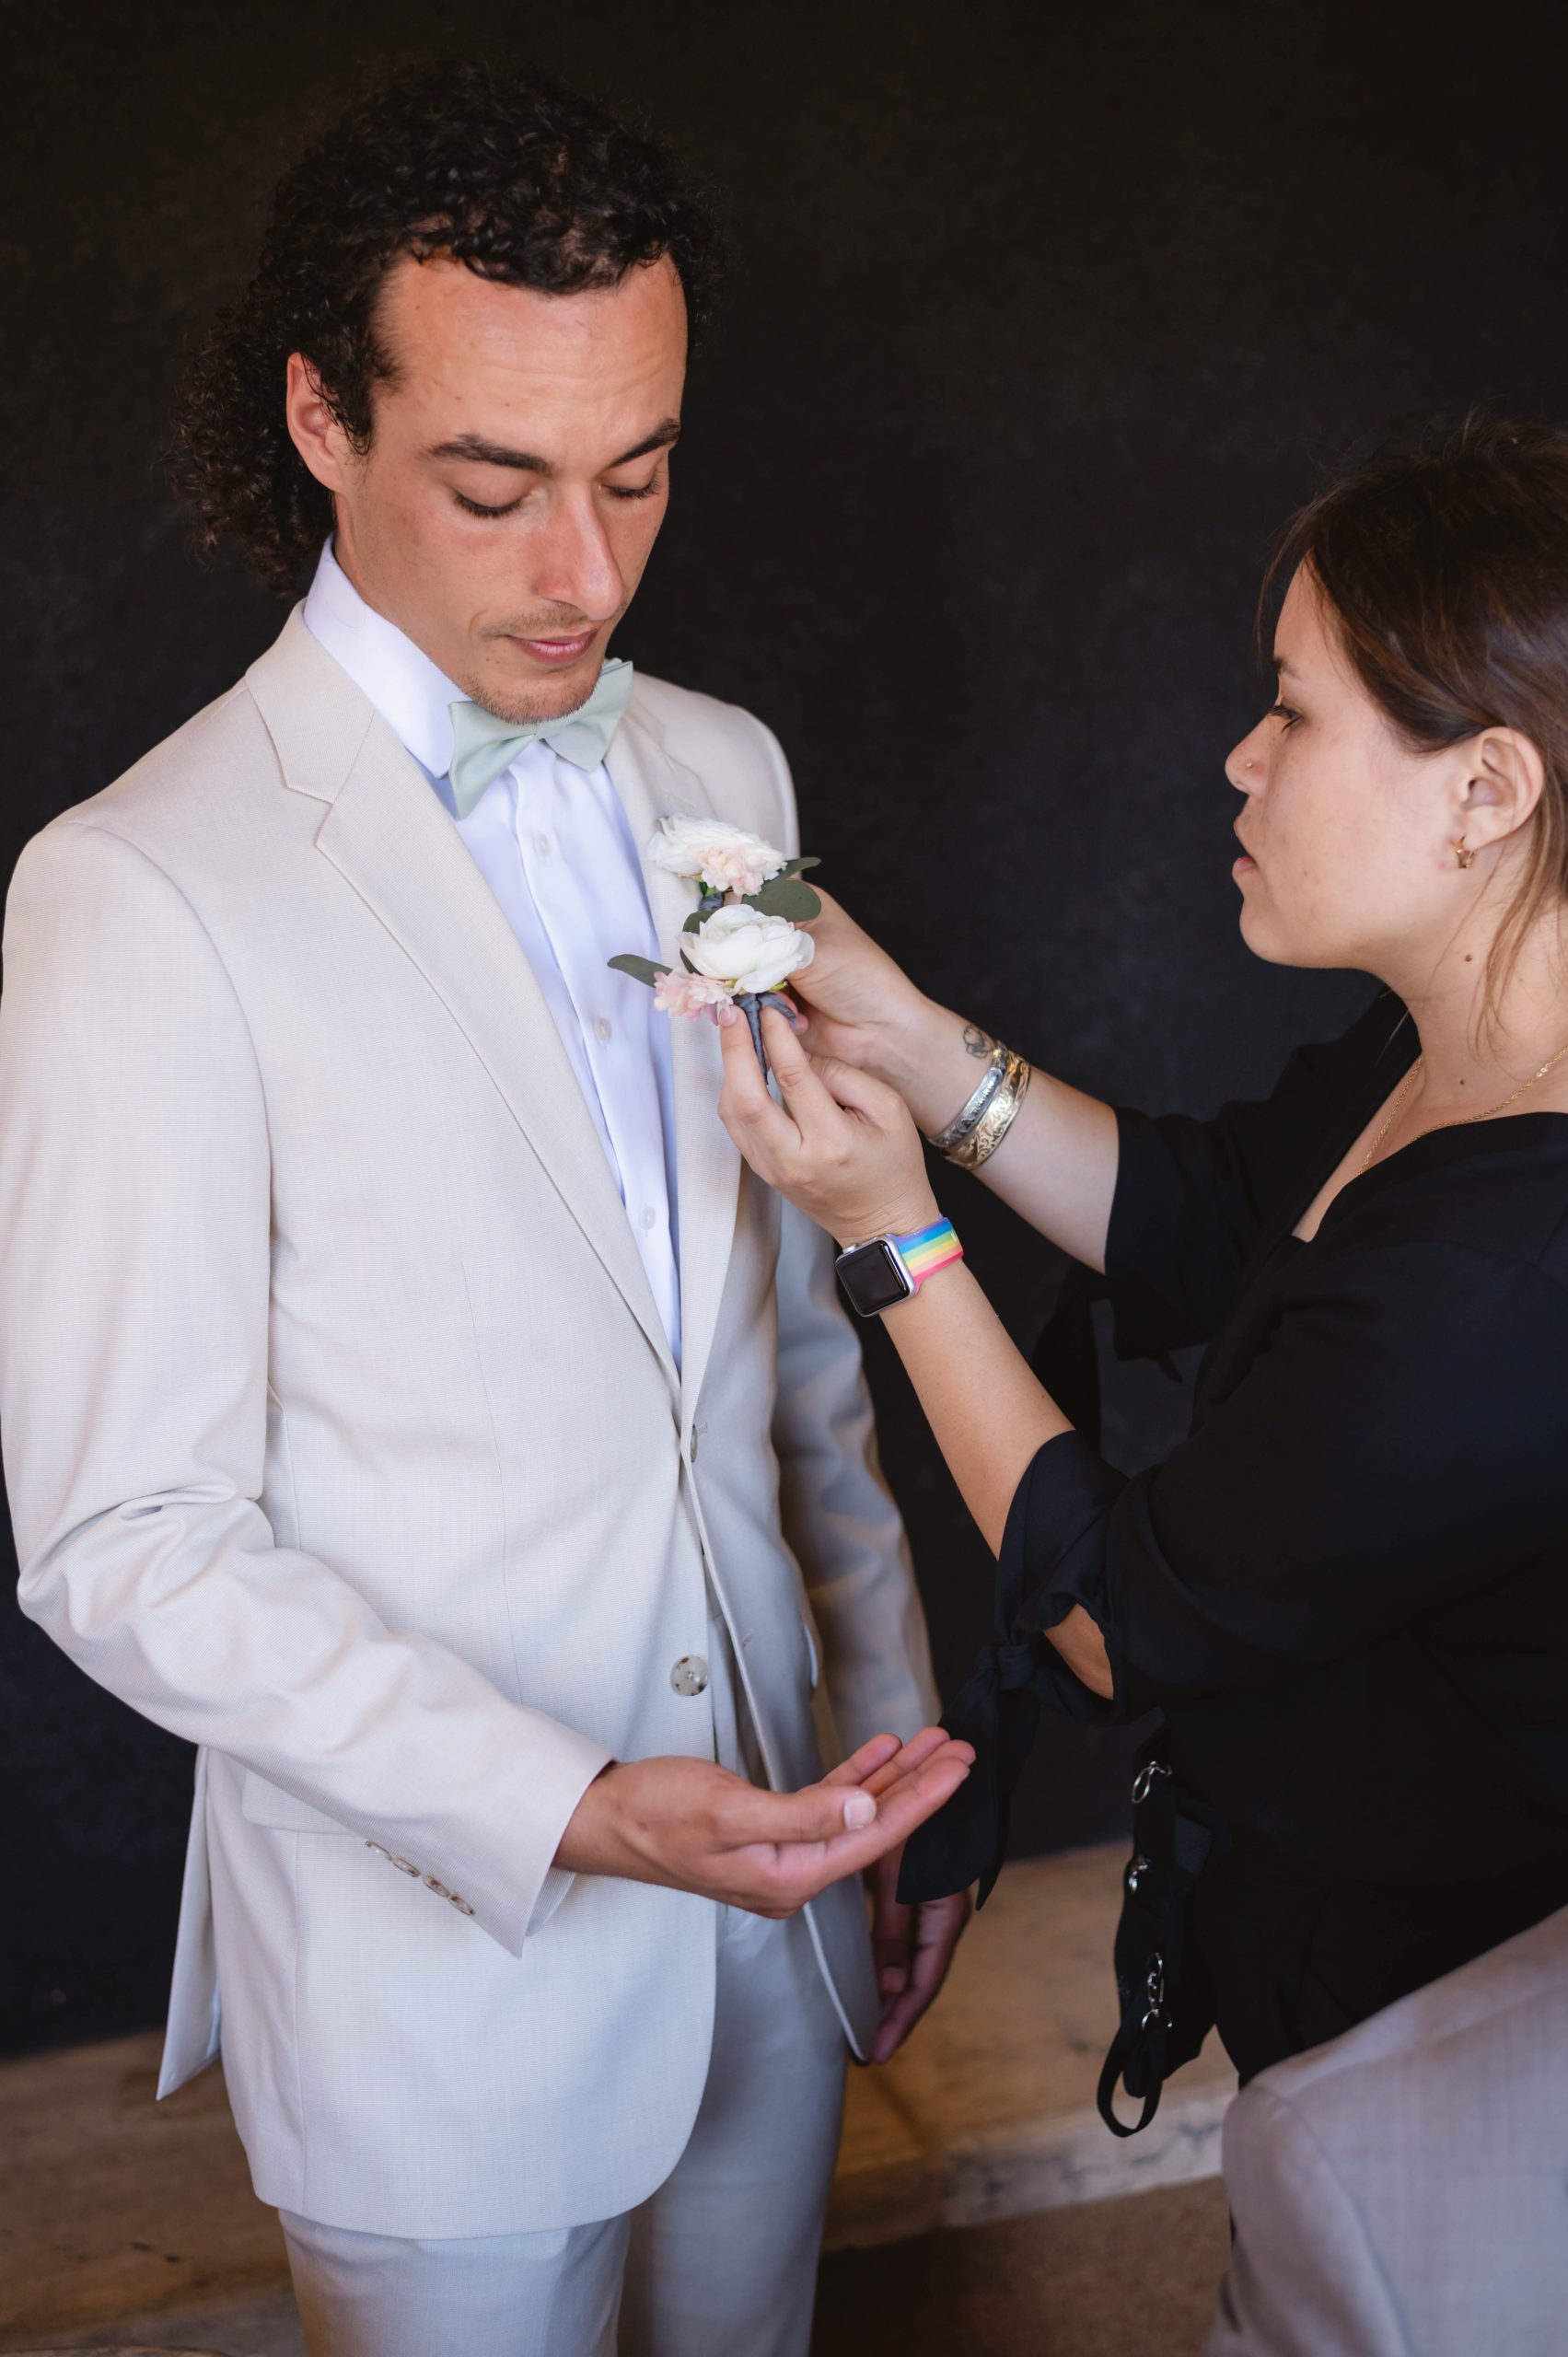 Wedding planner adding boutonniere on groomsmen for wedding at Viansa in Sonoma